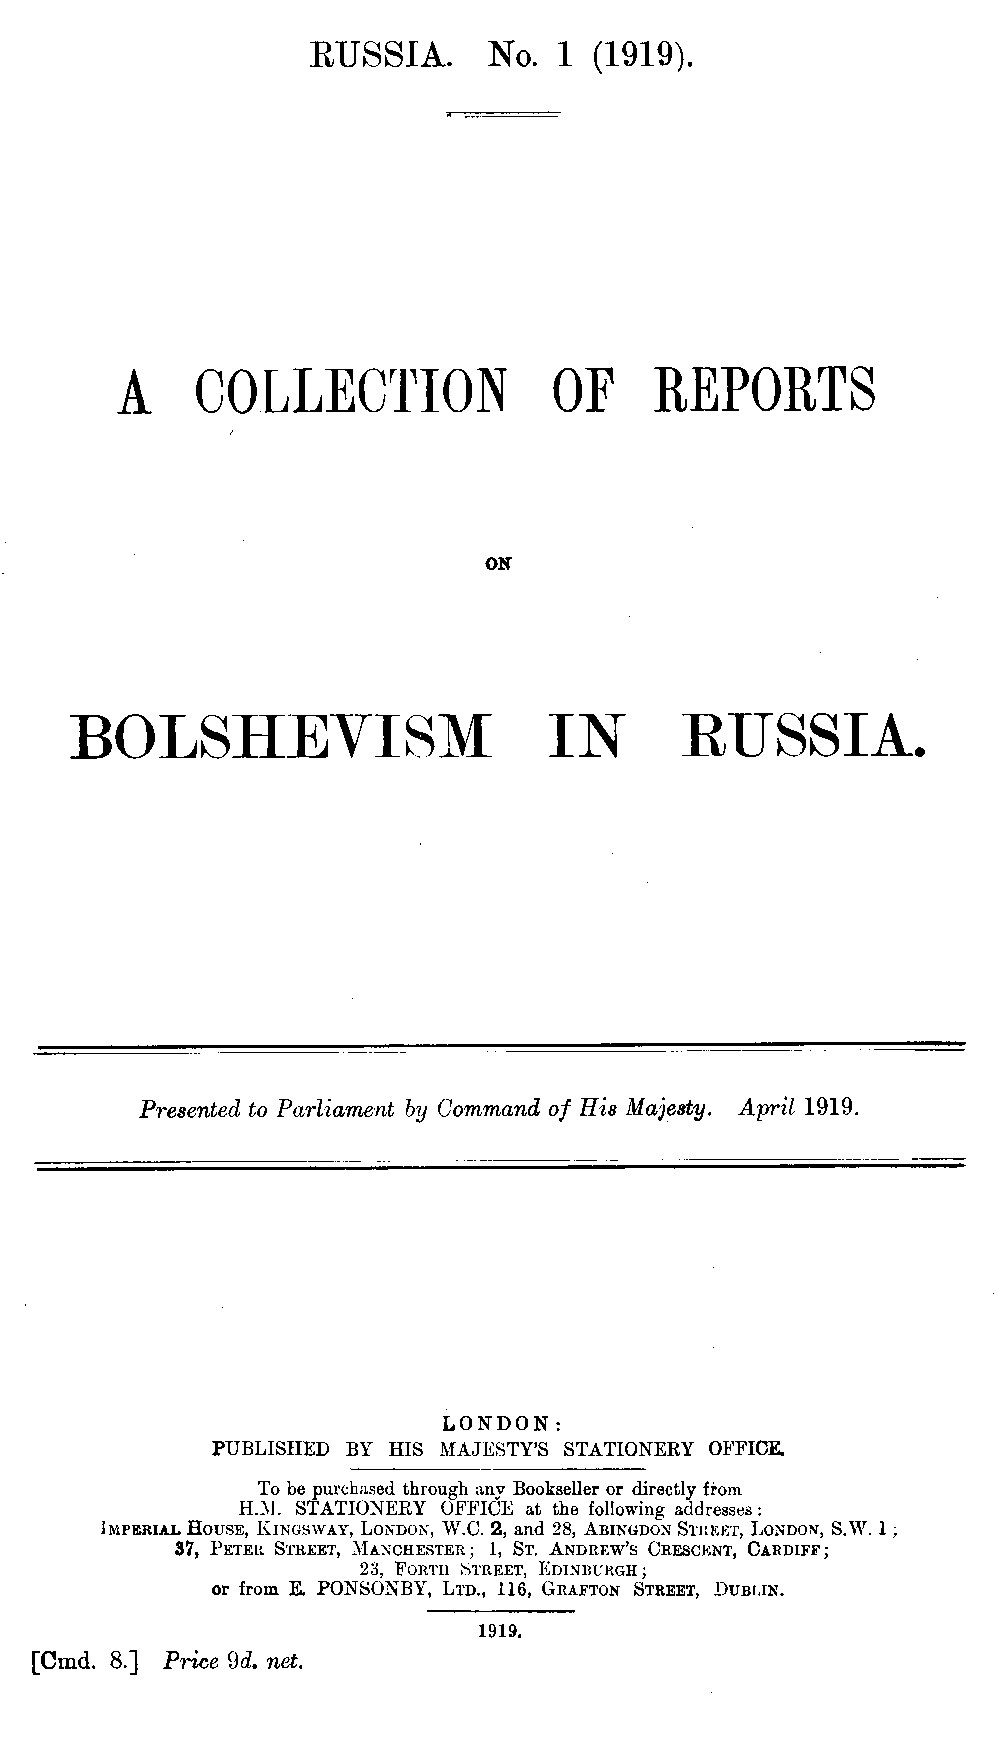 Russia No. 1 (1919)